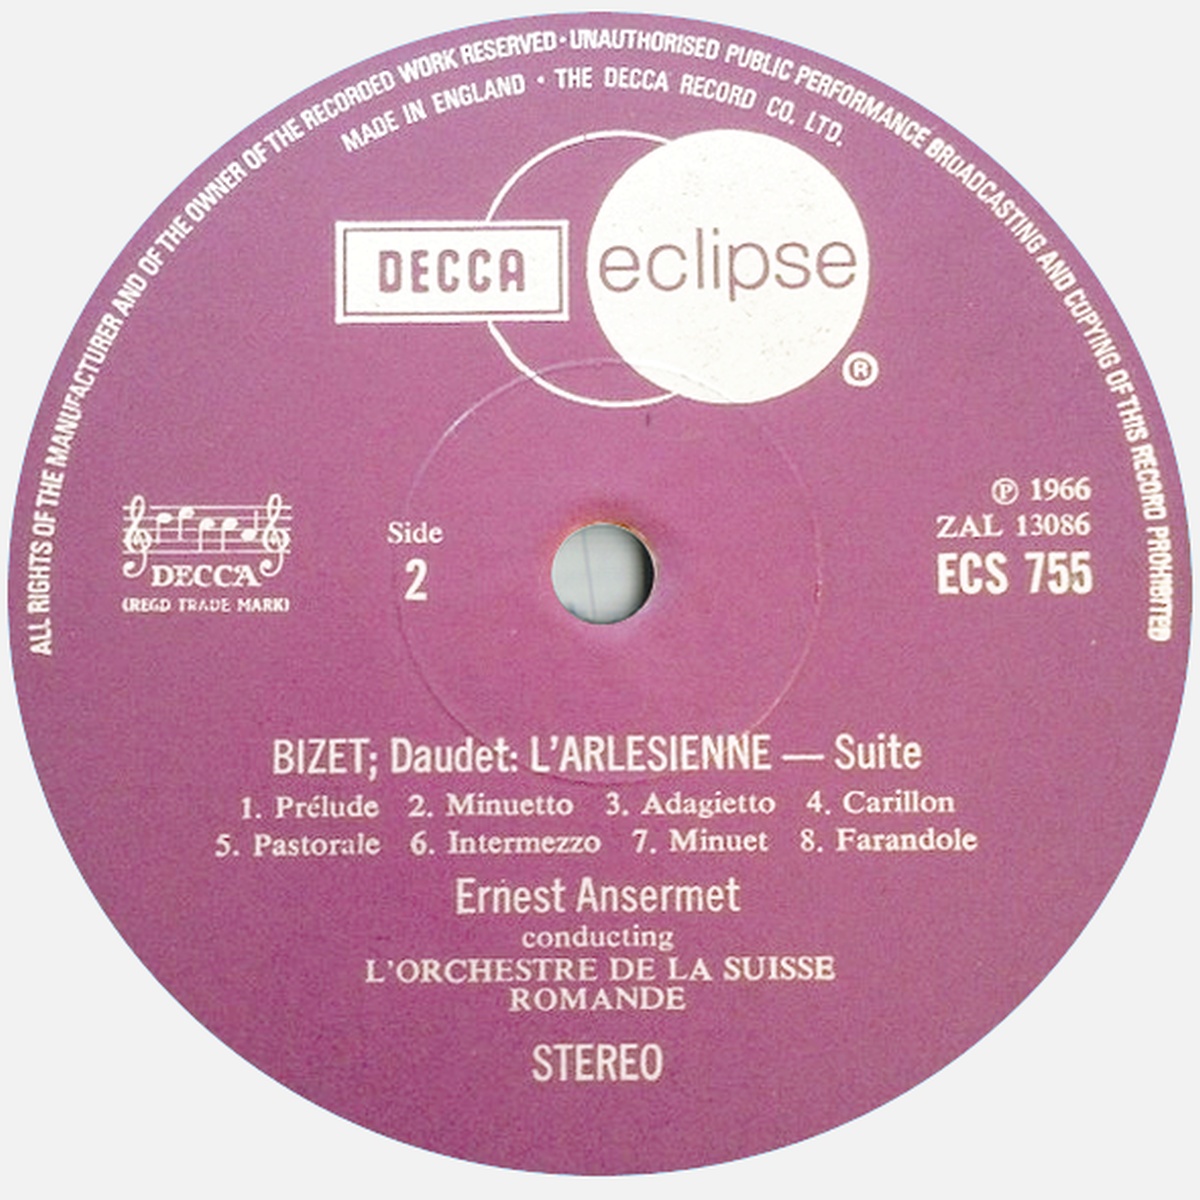 Étiquette verso Decca Eclipse ECS 755, cliquer pour une vue agrandie